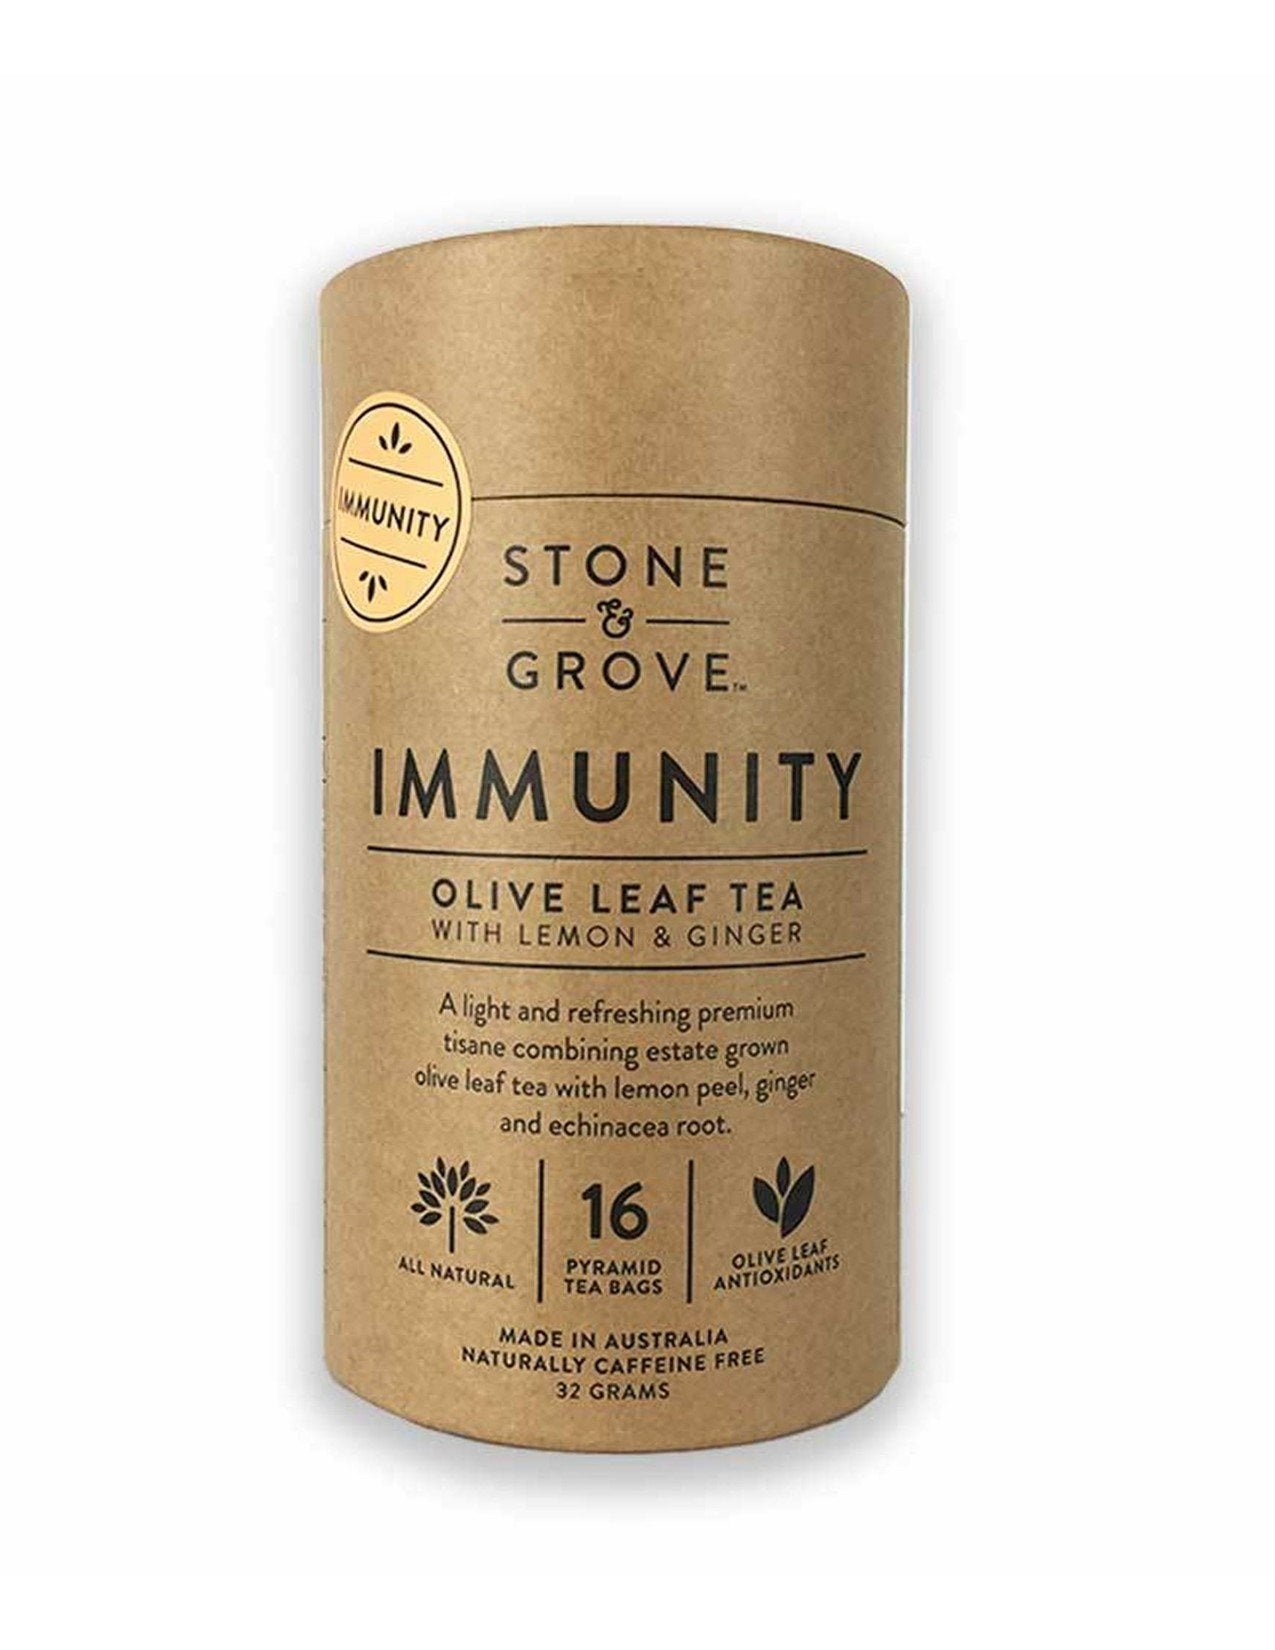 Stone and Grove Immunity Olive Leaf Tea